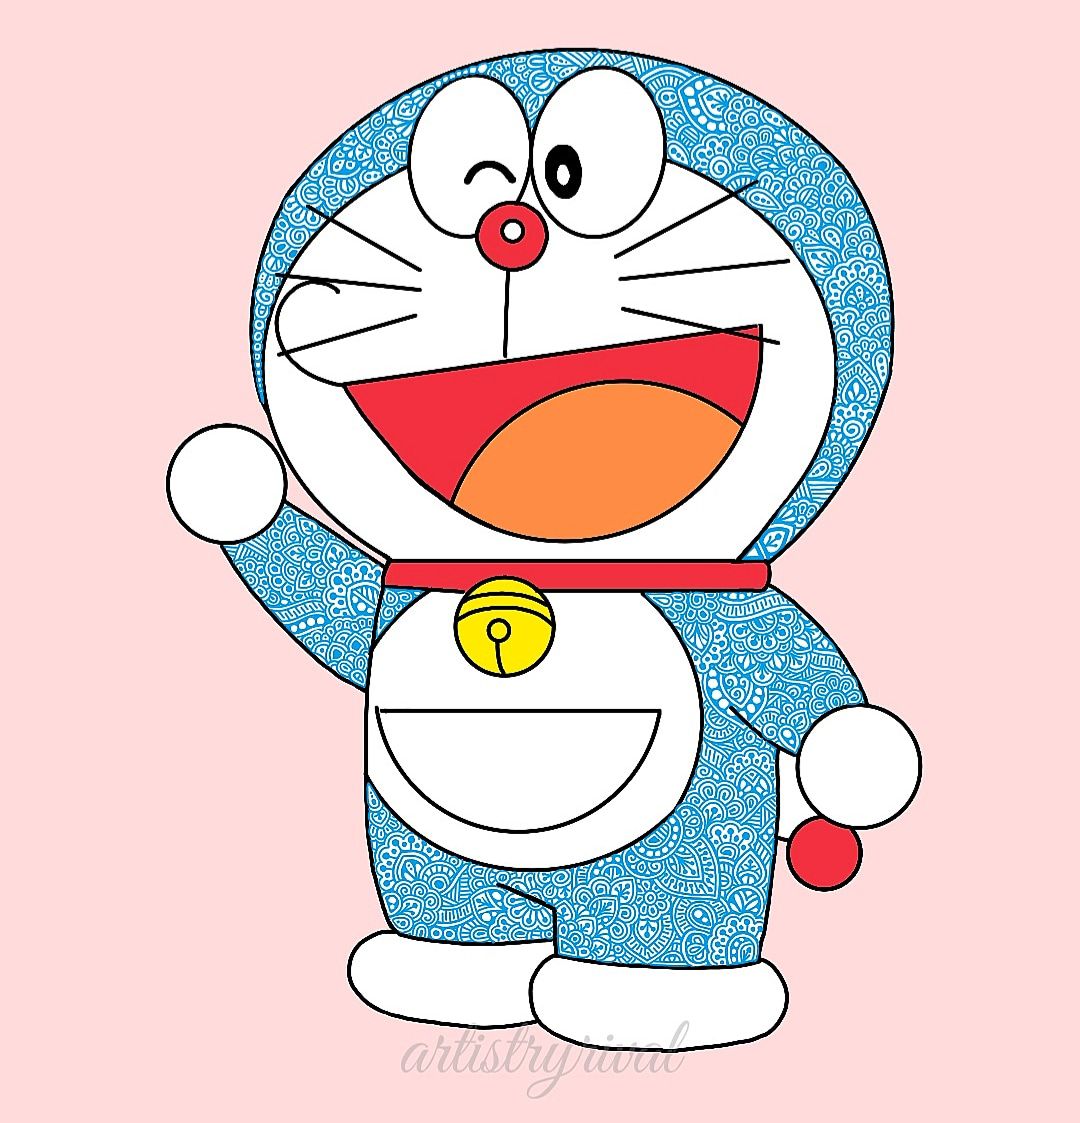 Avatar Doraemon - Hãy khám phá hình ảnh avatar Doremon dễ thương và đáng yêu này. Bạn sẽ không thể rời mắt khỏi nó! Doraemon là cặp đôi hoàn hảo cho bất kỳ người hâm mộ anime nào!